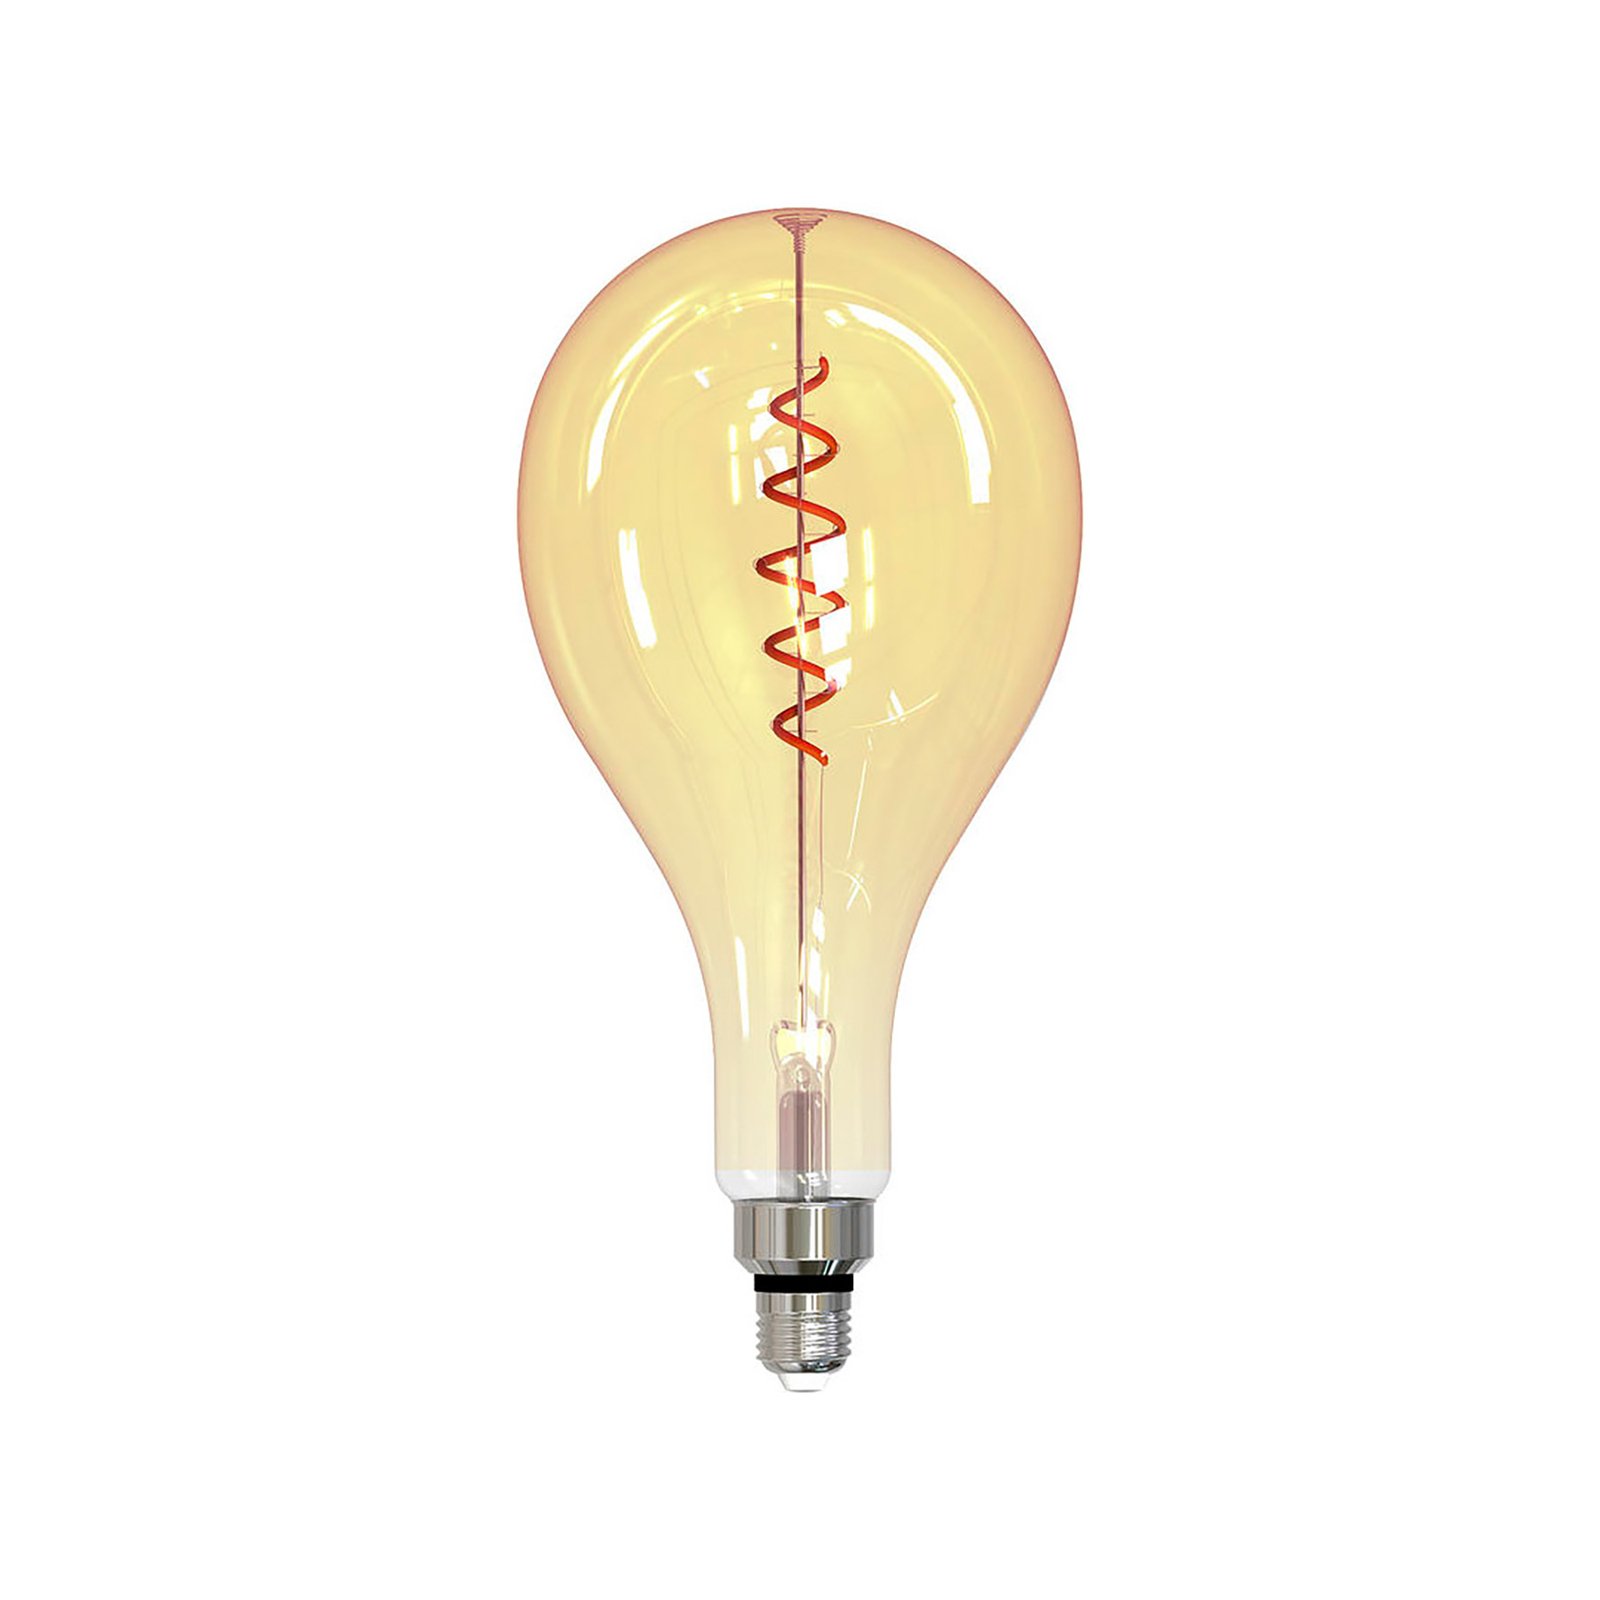 Müller Licht tint white LED lamp E27 4,9 W goud